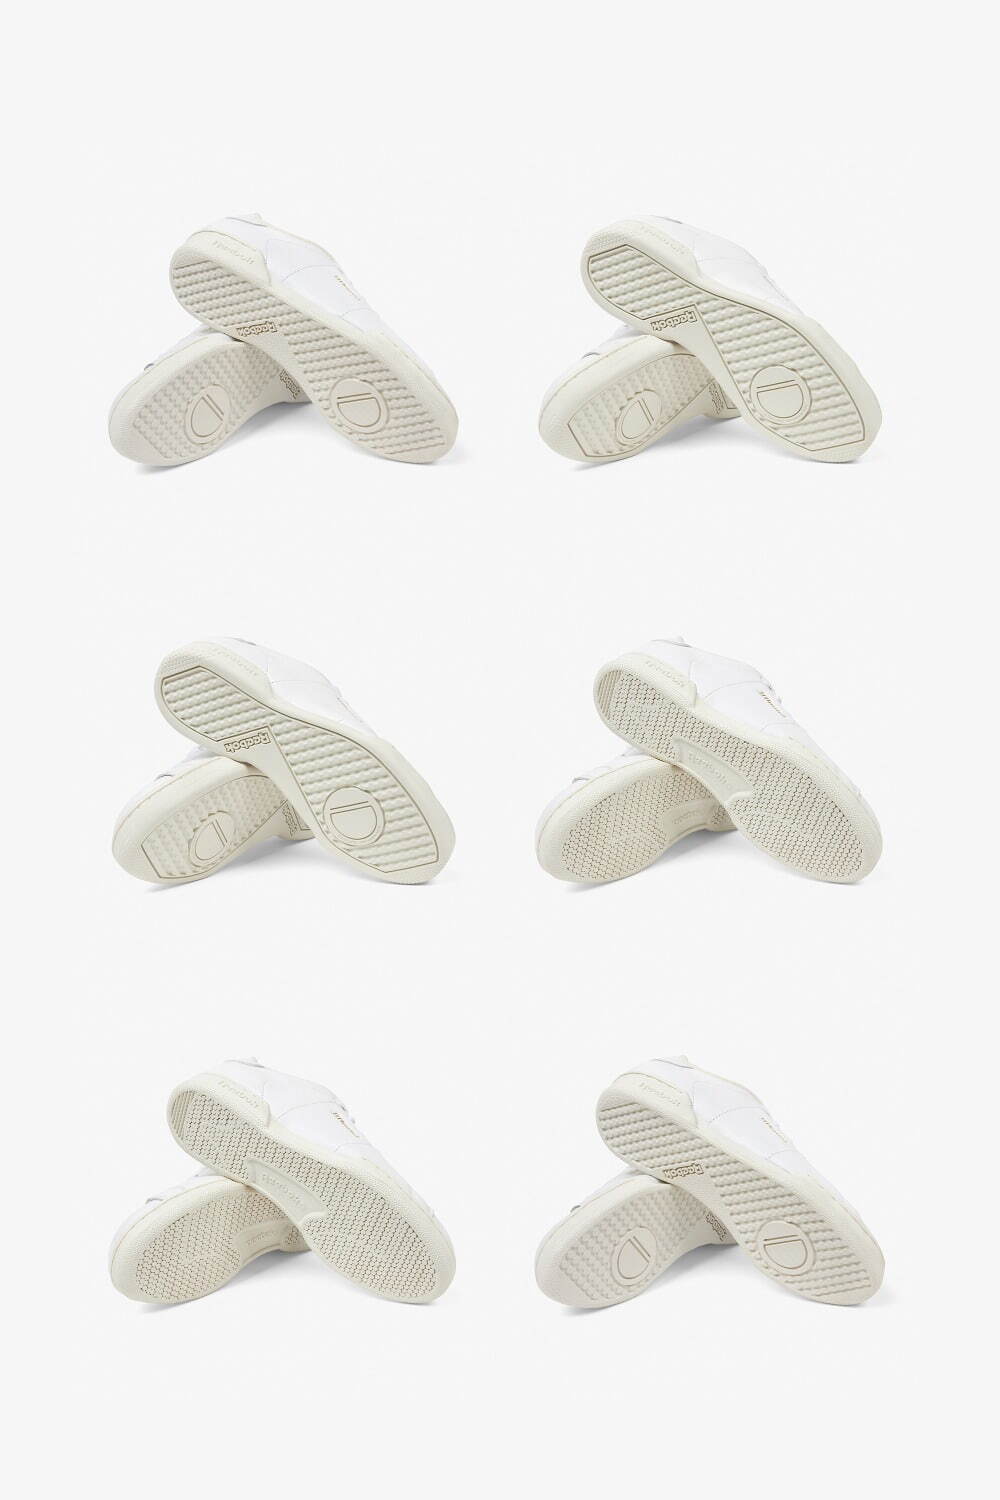 リーボック×ジョウンド“金ロゴ”入り白スニーカー、1足ずつ異なるオンリーワンデザイン｜写真4